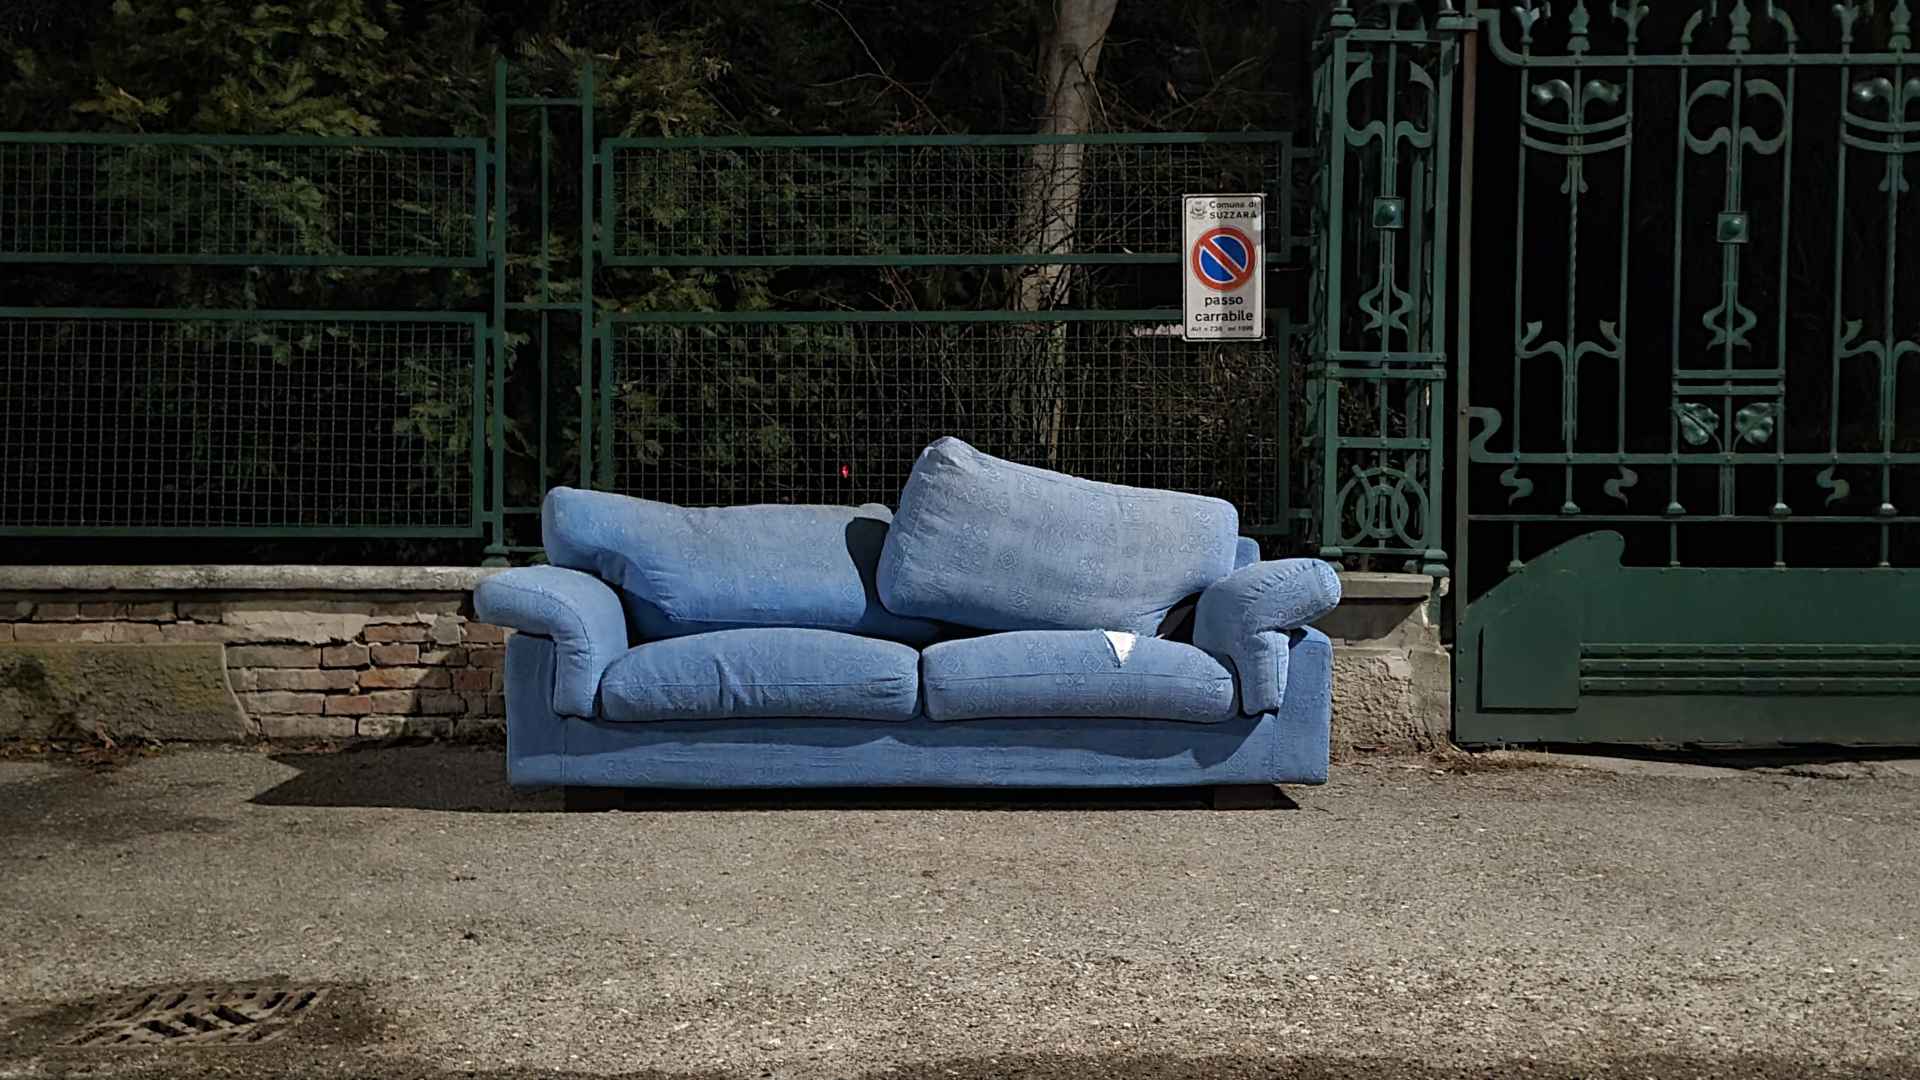 Altes Sofa, dass nicht mehr zum Verkauf auf Secondhand-Plattformen taugt.